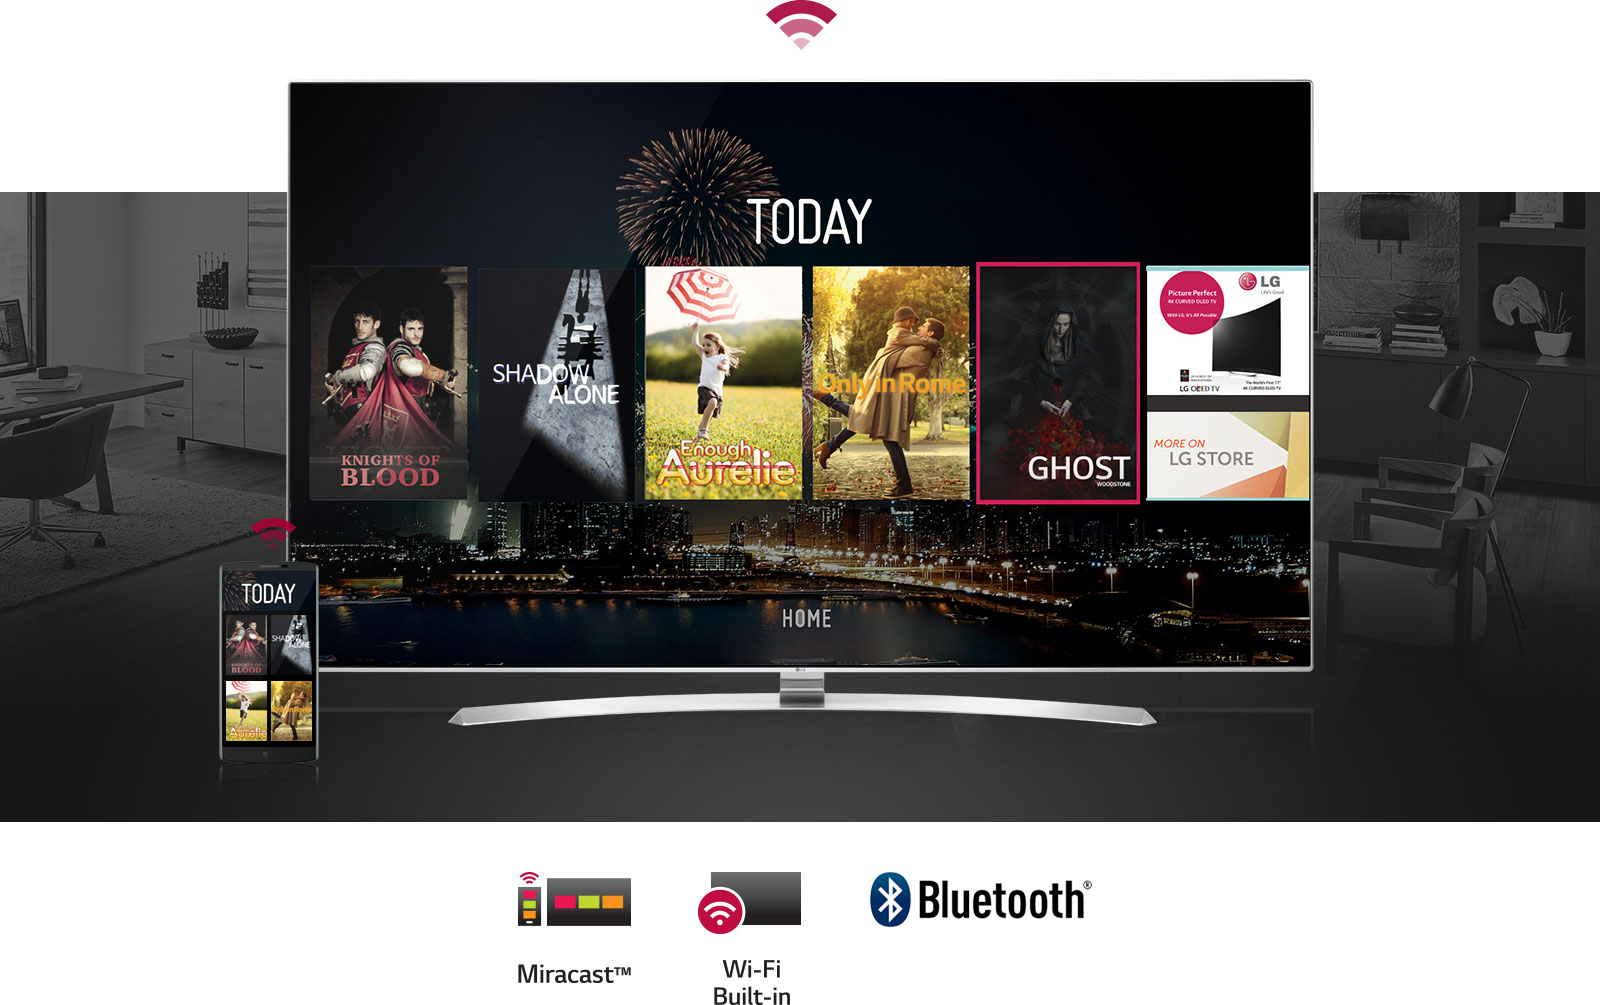 Connecter sa télévision à sa box internet en wifi ( Smart tv ) ! 📺 